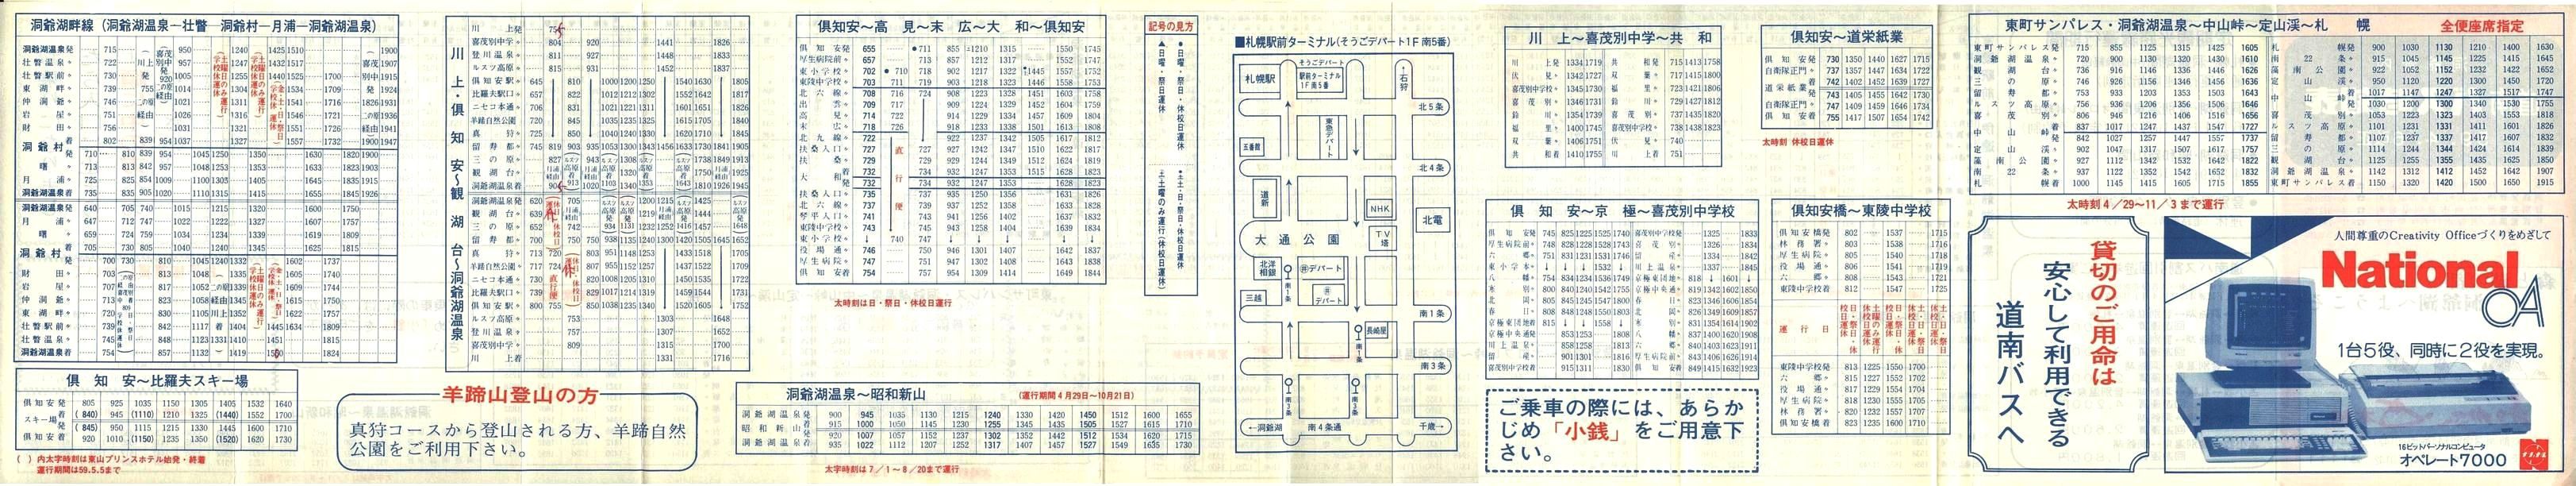 1984-04-06改正_道南バス_洞爺管内時刻表裏面